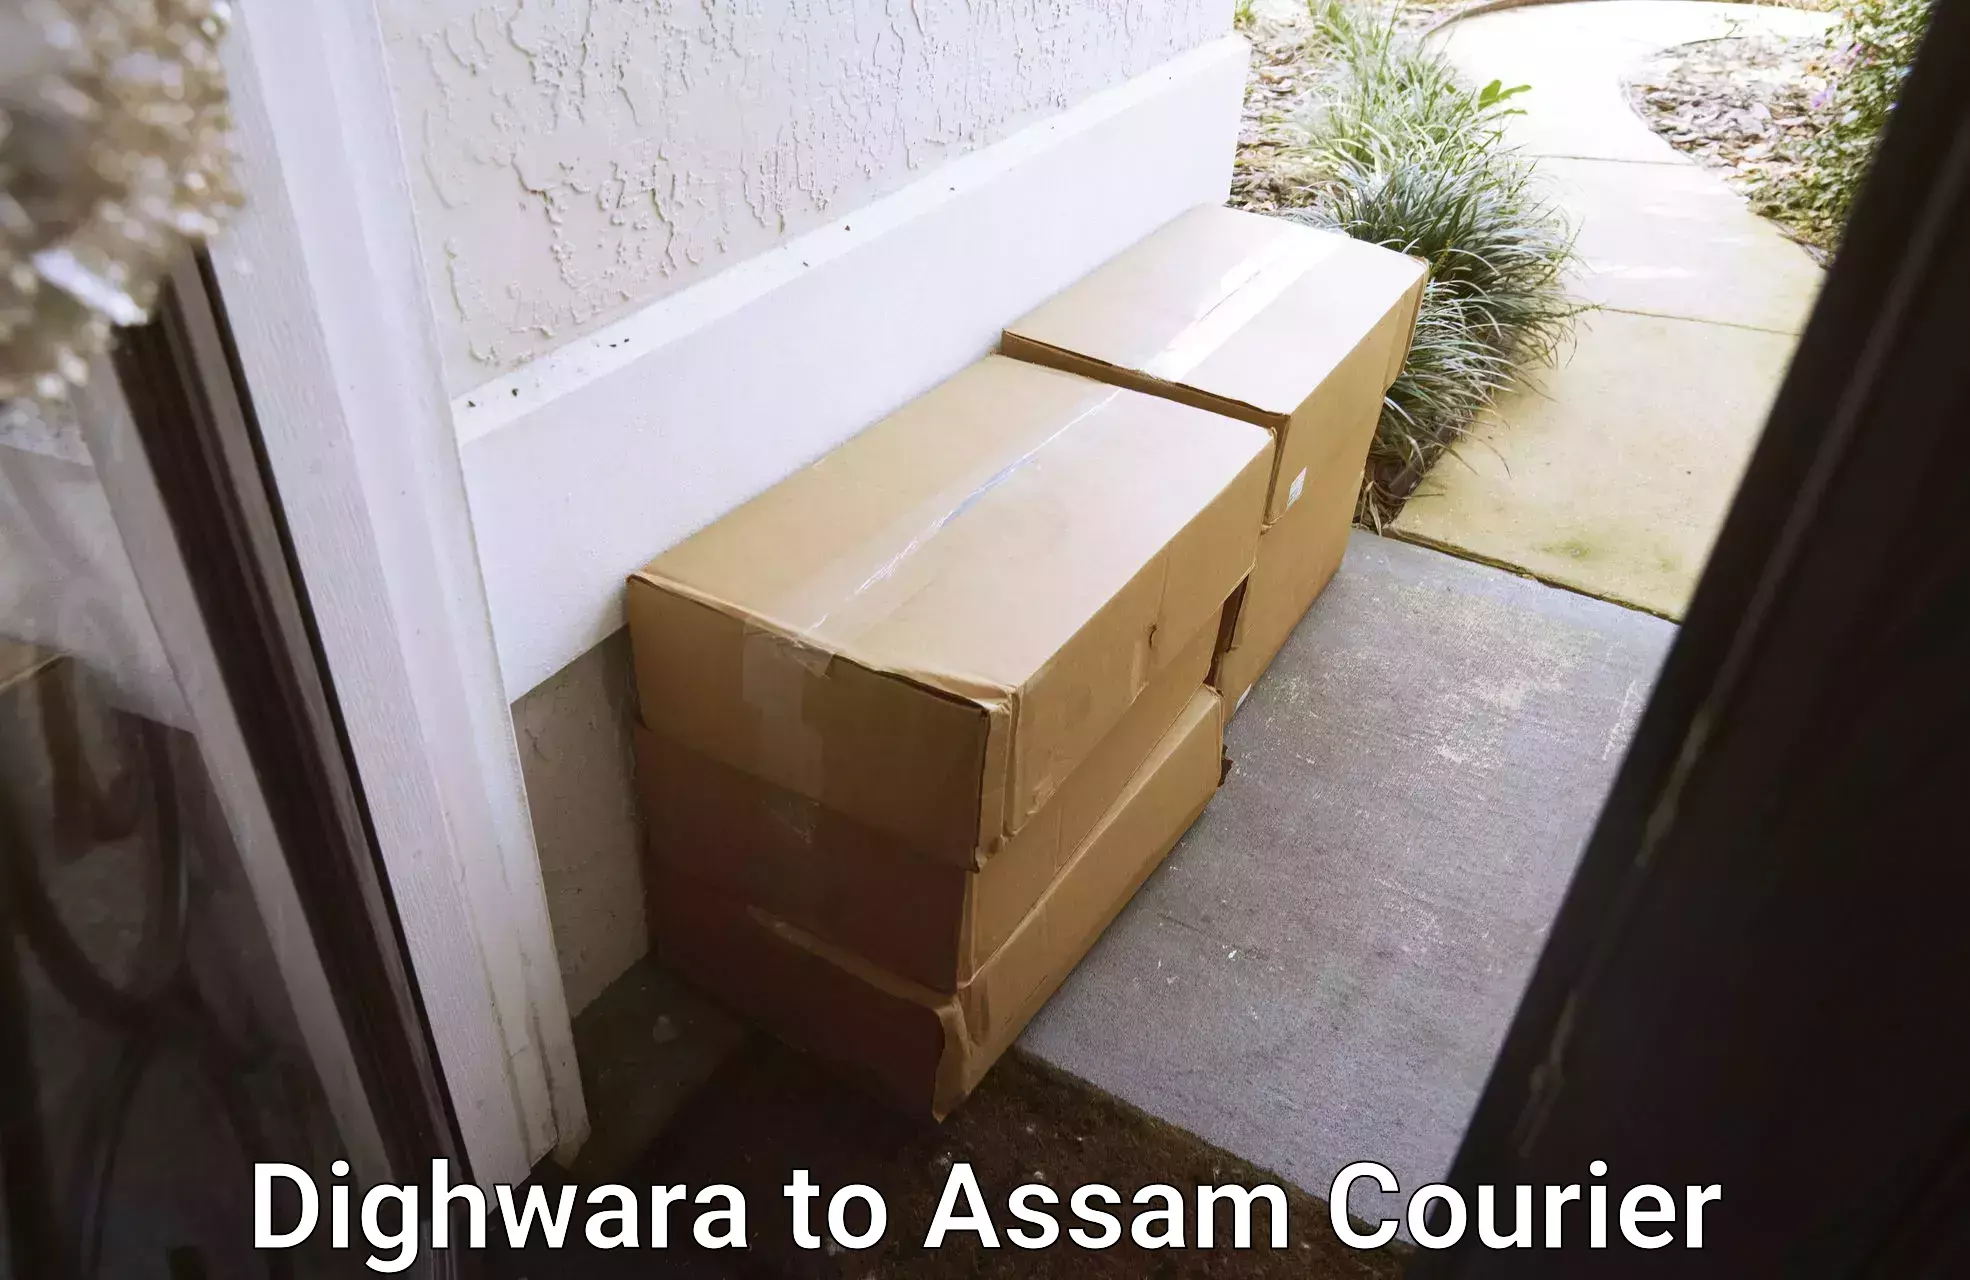 Efficient packing and moving Dighwara to Jamuguri